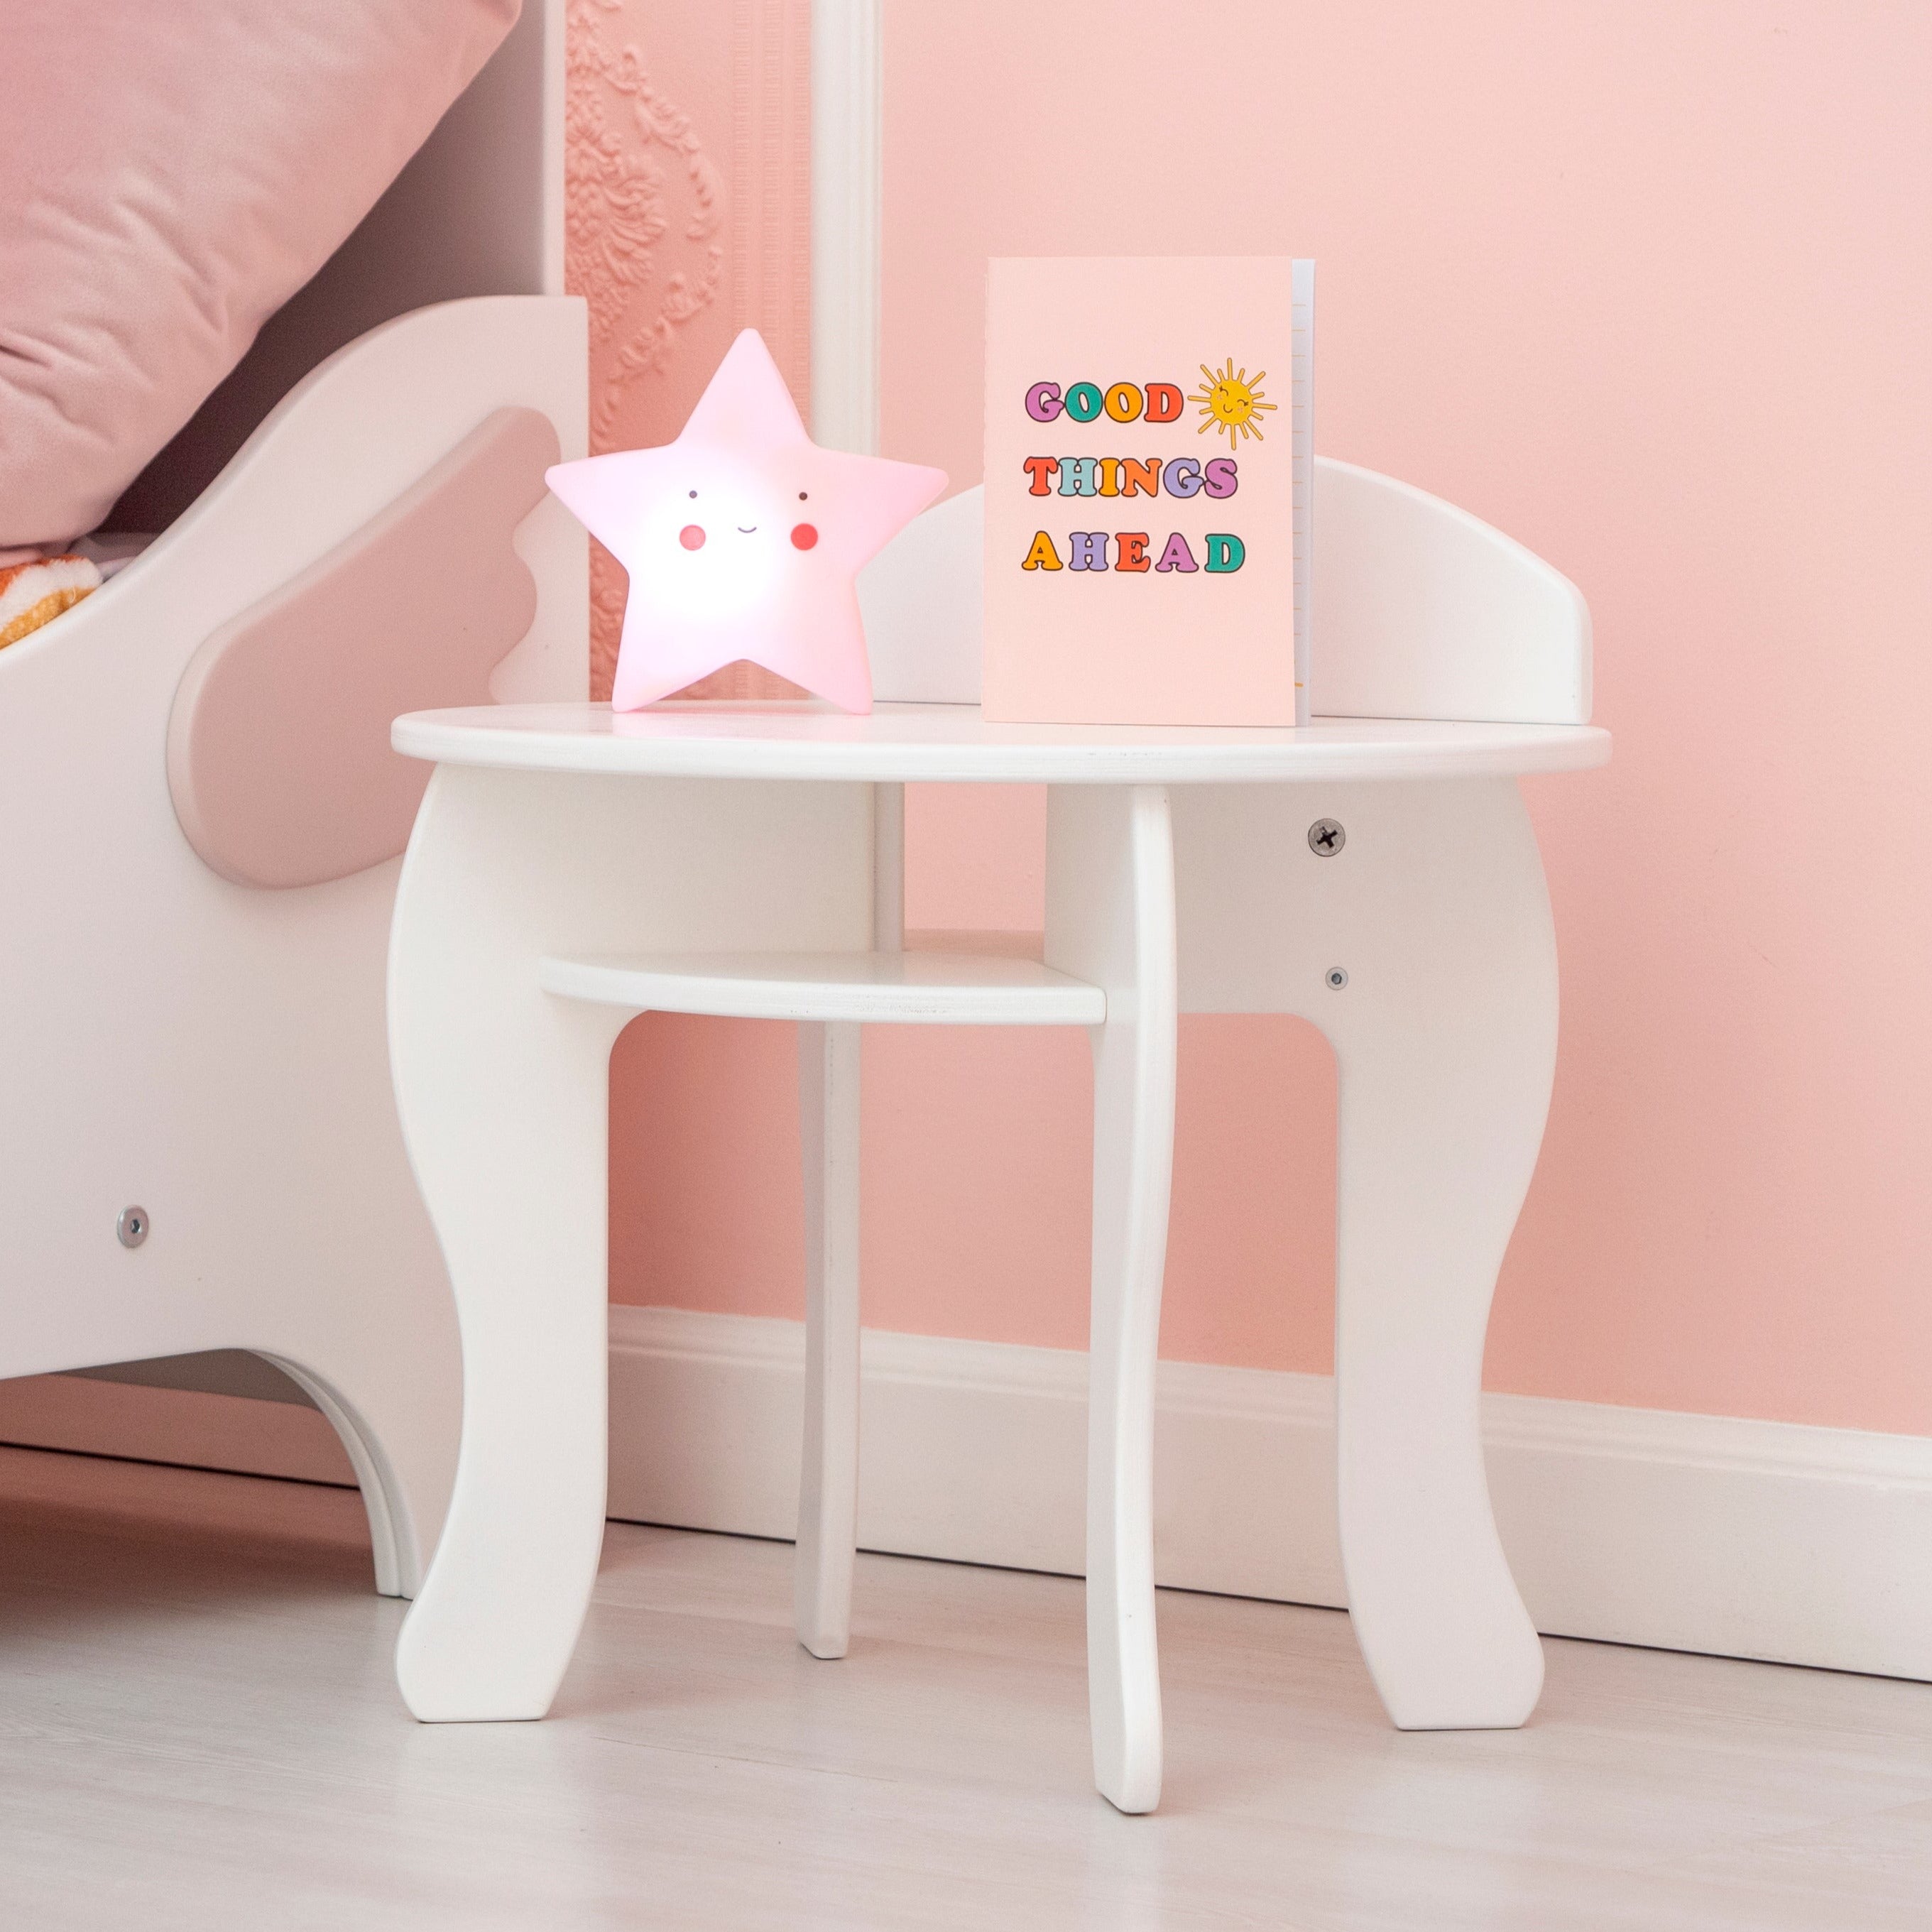 白とピンクの色の女の子の赤ちゃん用のベッドサイドテーブルとナイトスタンド「エンジェル」